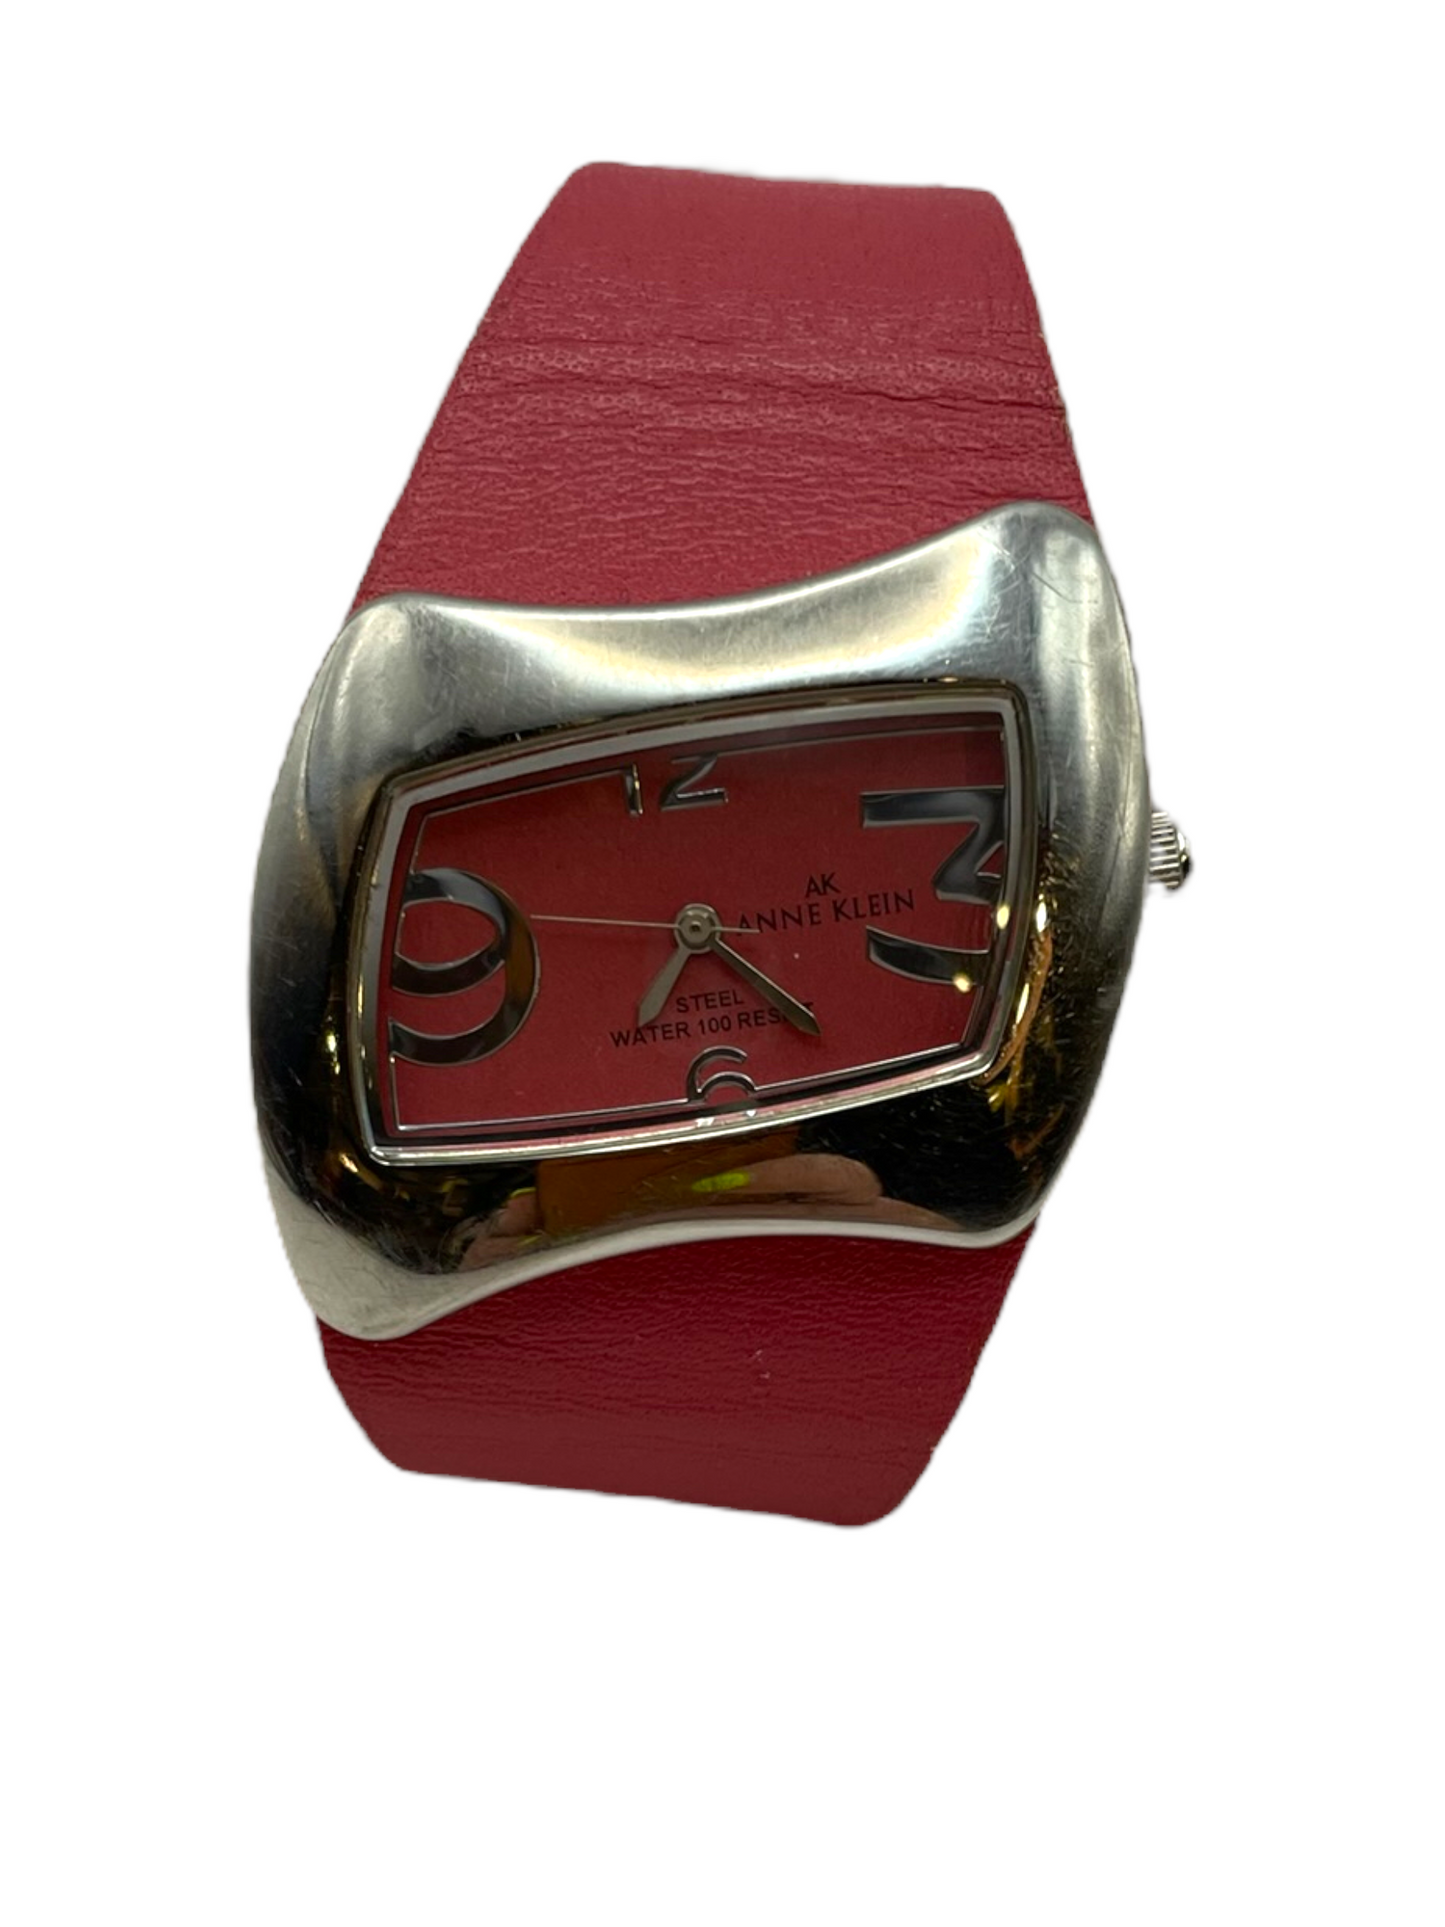 Vintage Pink Anne Klein Watch*